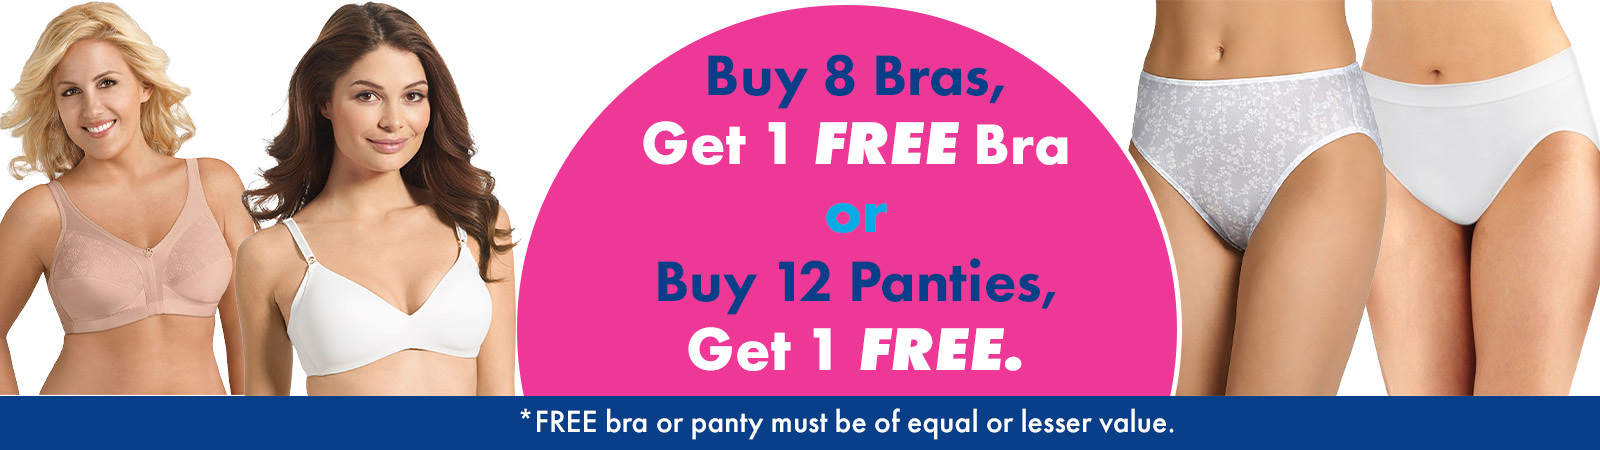 Buy 8 Bras, Get 1 Free. Buy 12 Panties, Get 1 Free. 